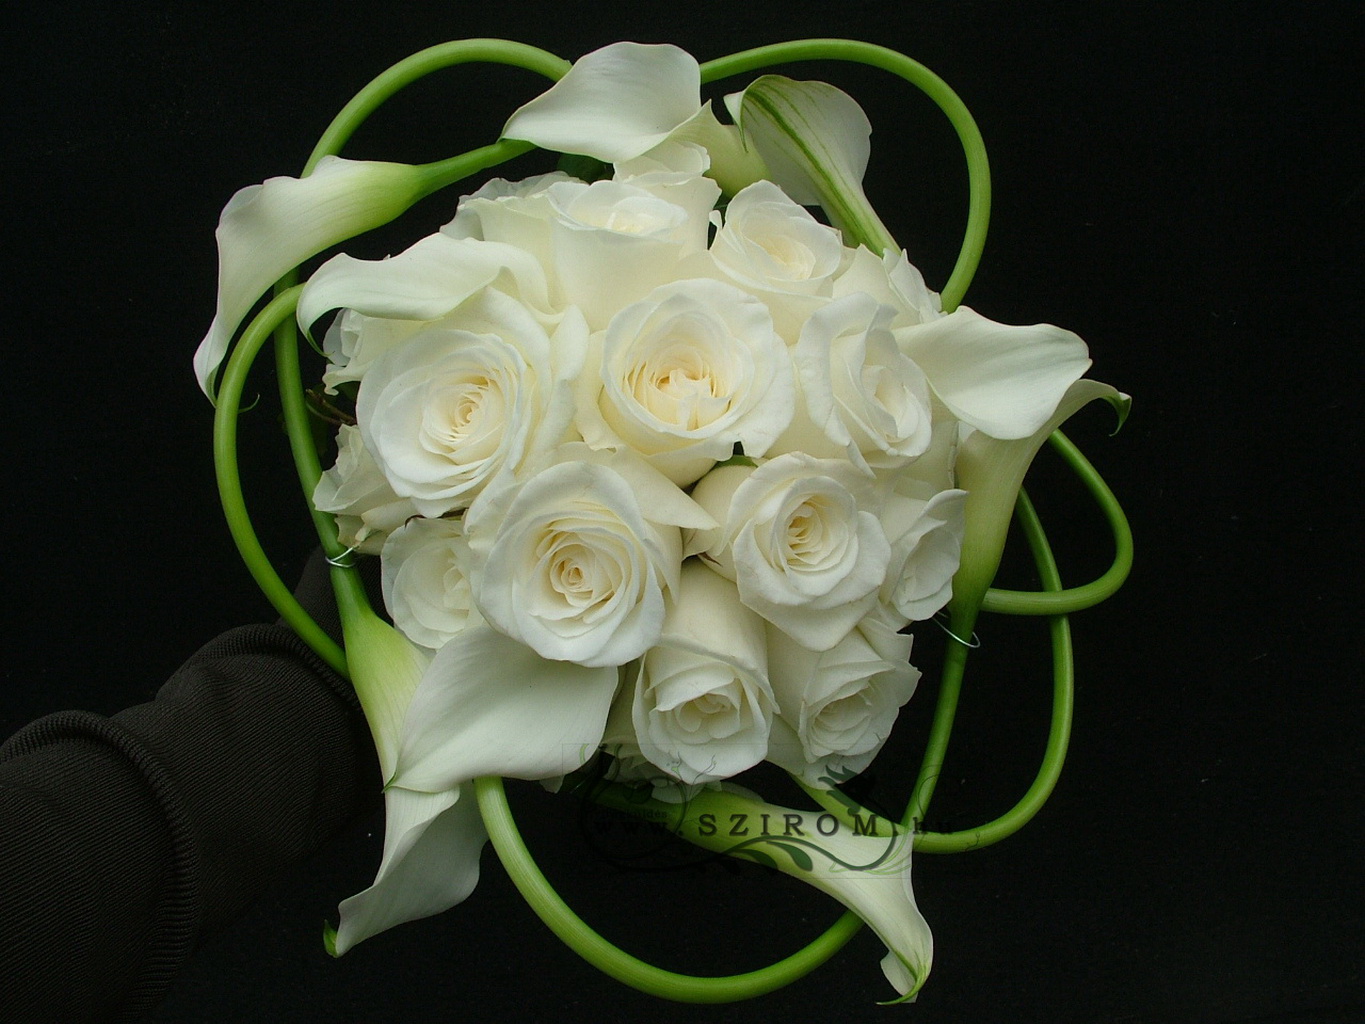 Menyaszonyi csokor kálával és rózsával (fehér)